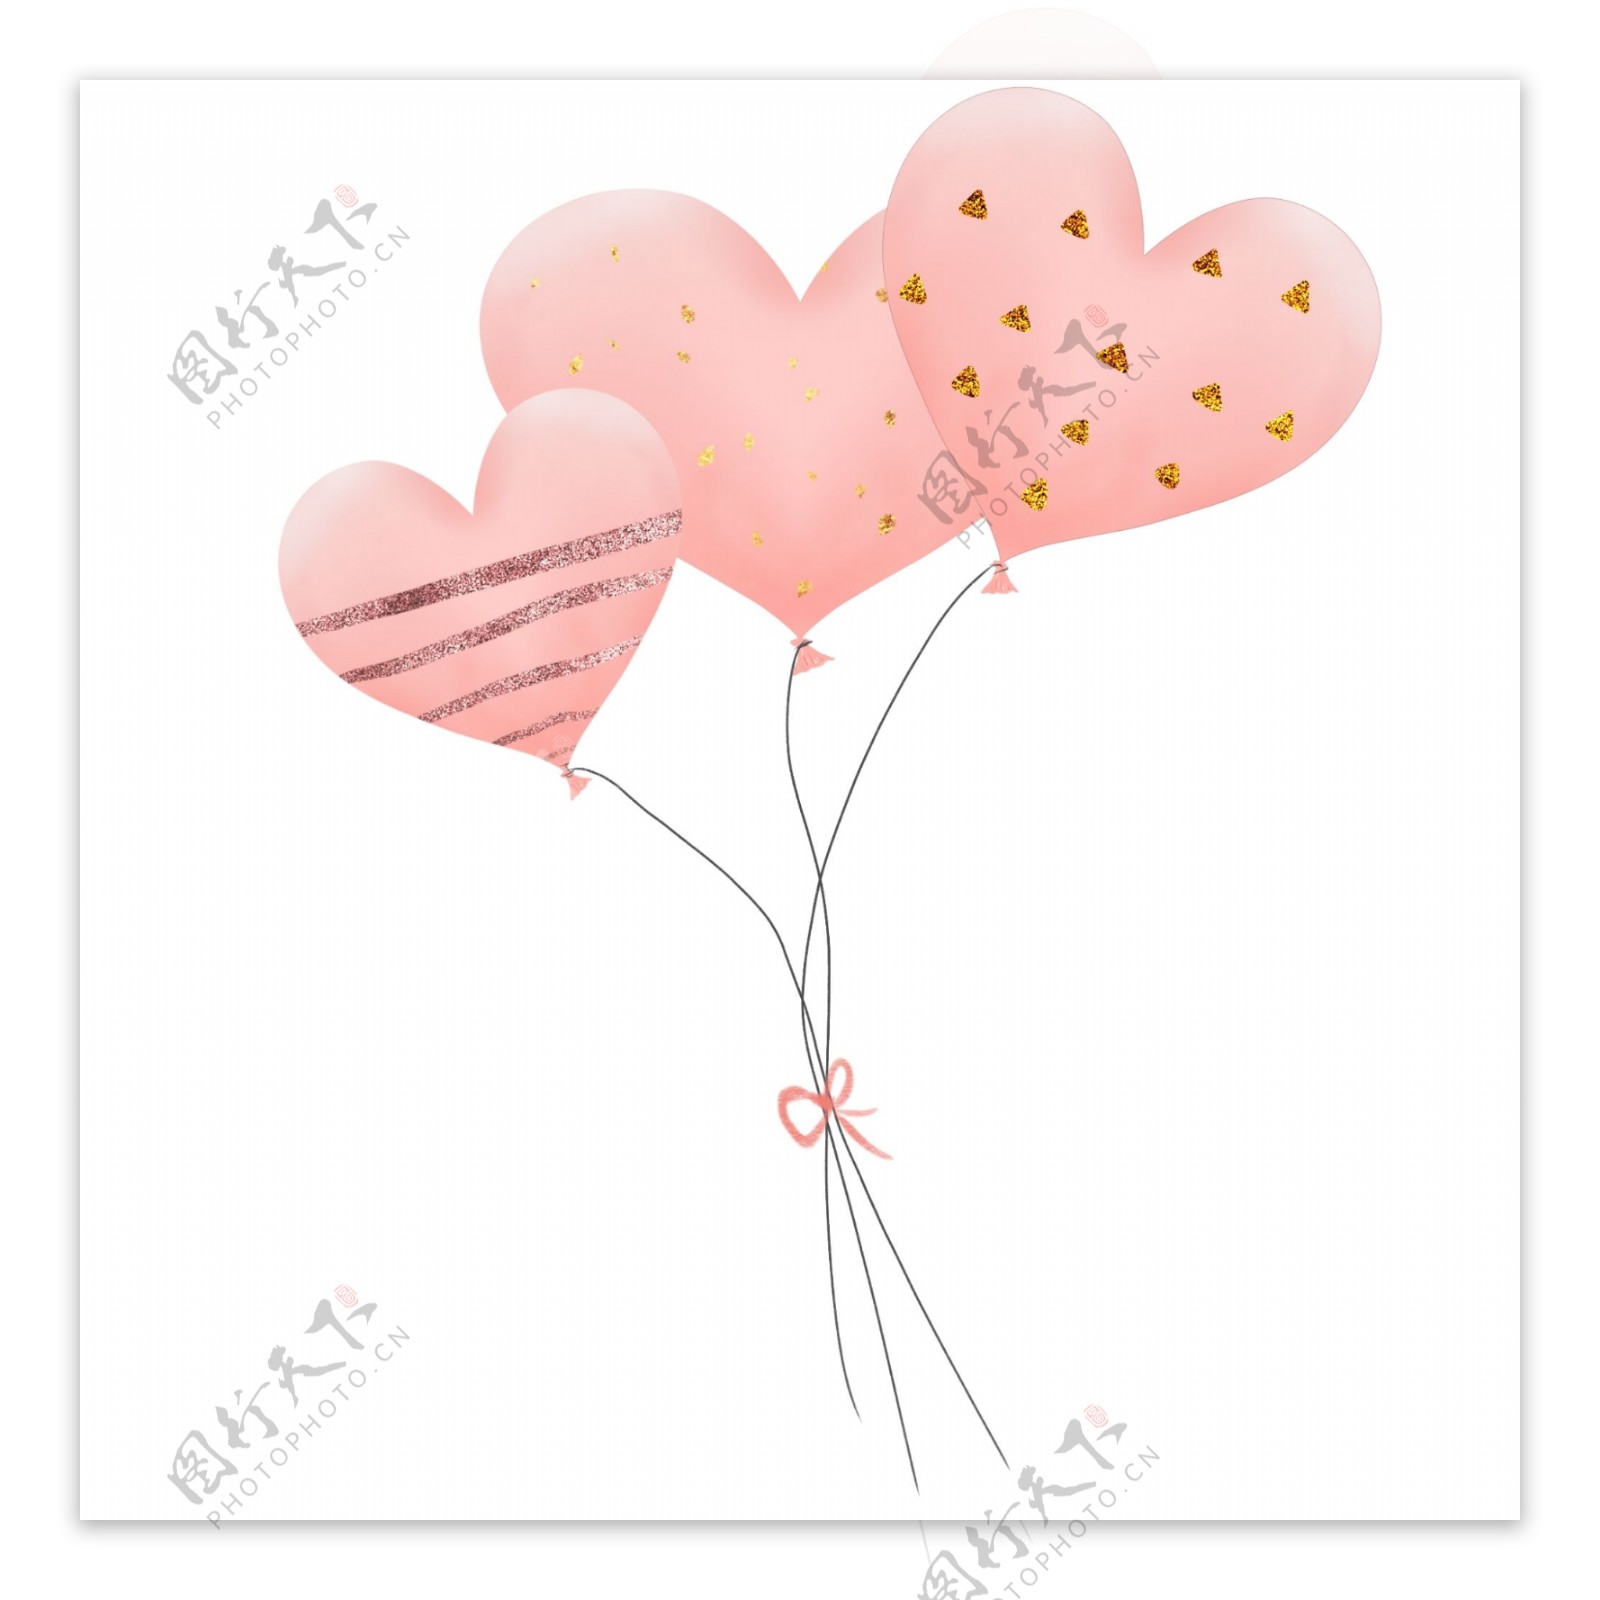 三只粉色手绘立体金粉装饰爱心告白气球束